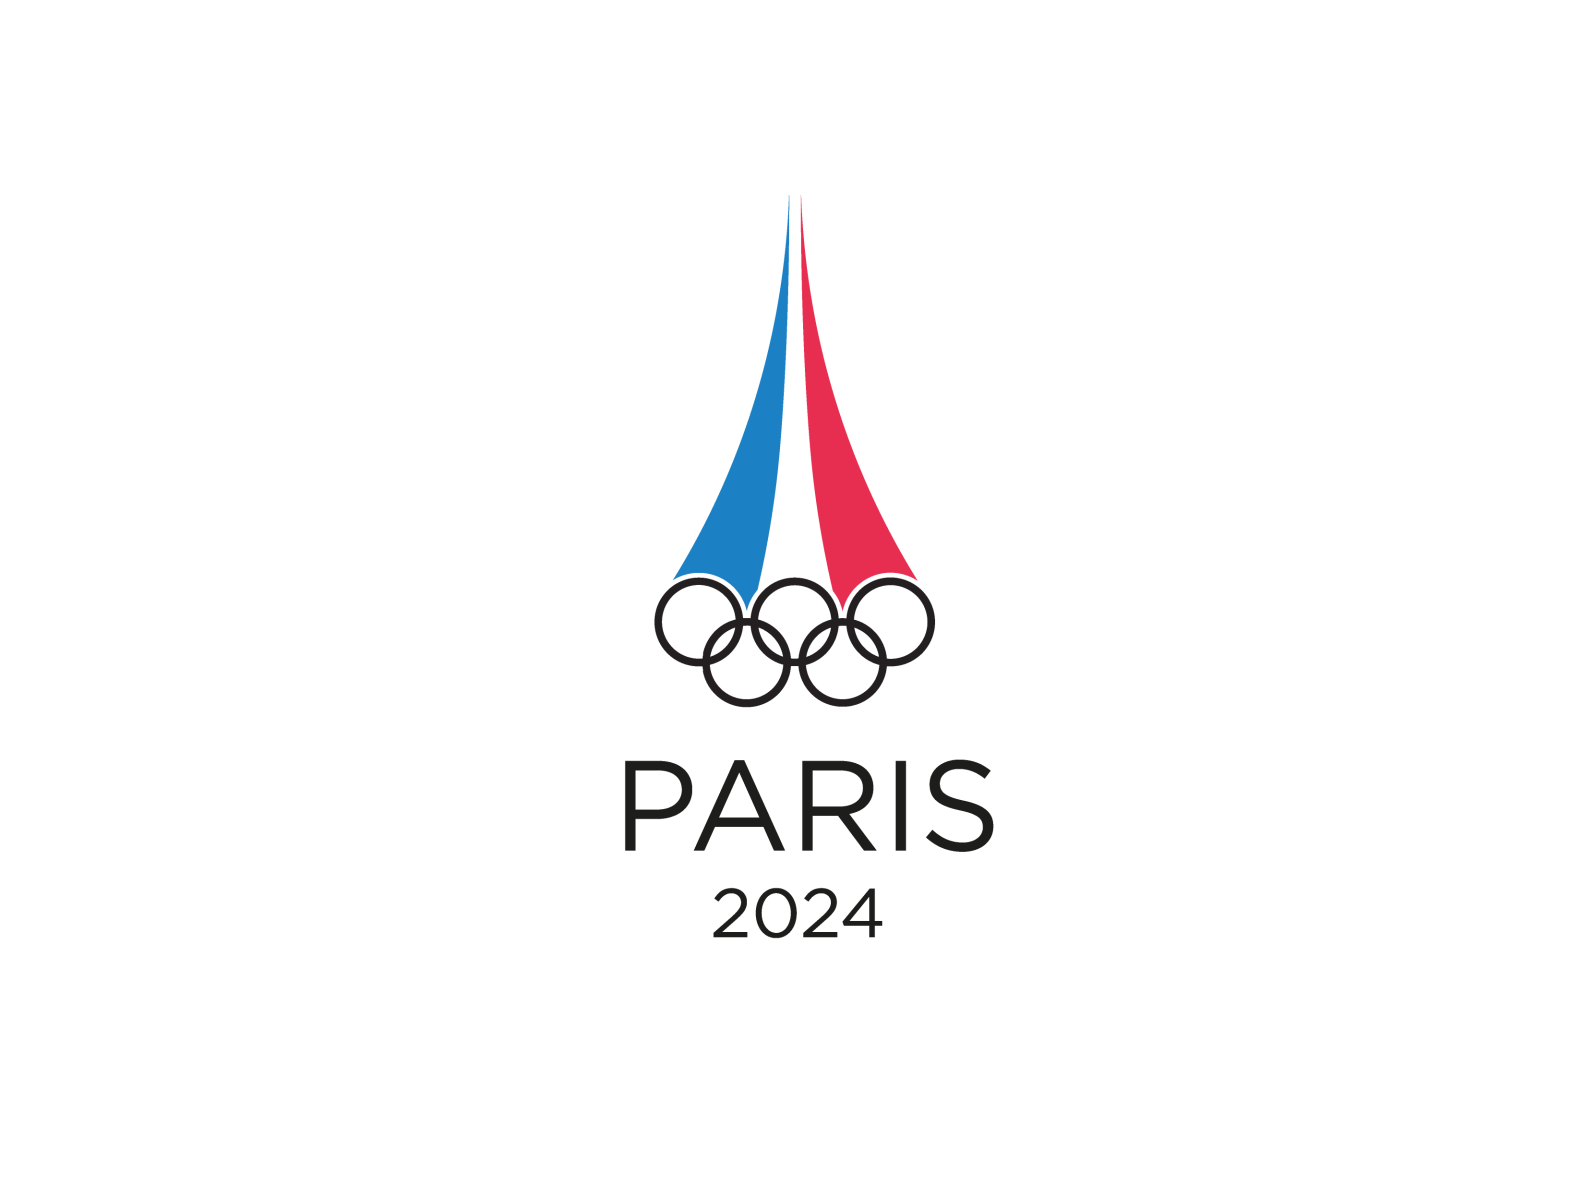 Ааа игры 2024. Олимпийские игры в Париже 2024. Paris 2024 логотип. Paris 2024 Olympics logo.